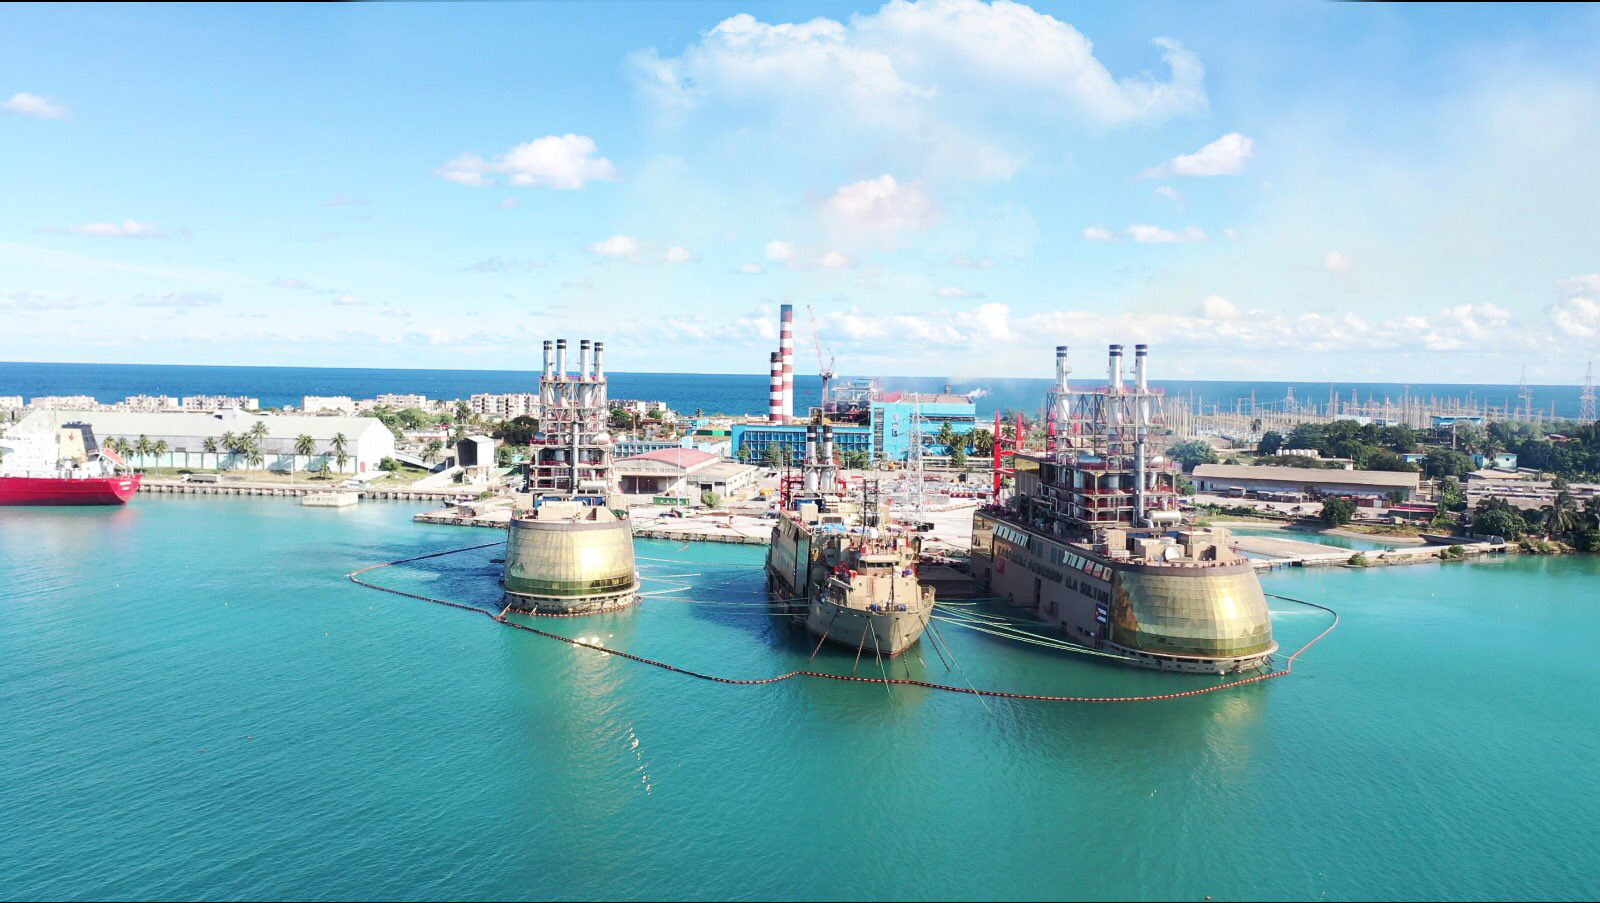 Европа ведет переговоры, чтобы арендовать турецкую плавучую электростанцию. Фото: twitter.com/karpowership​